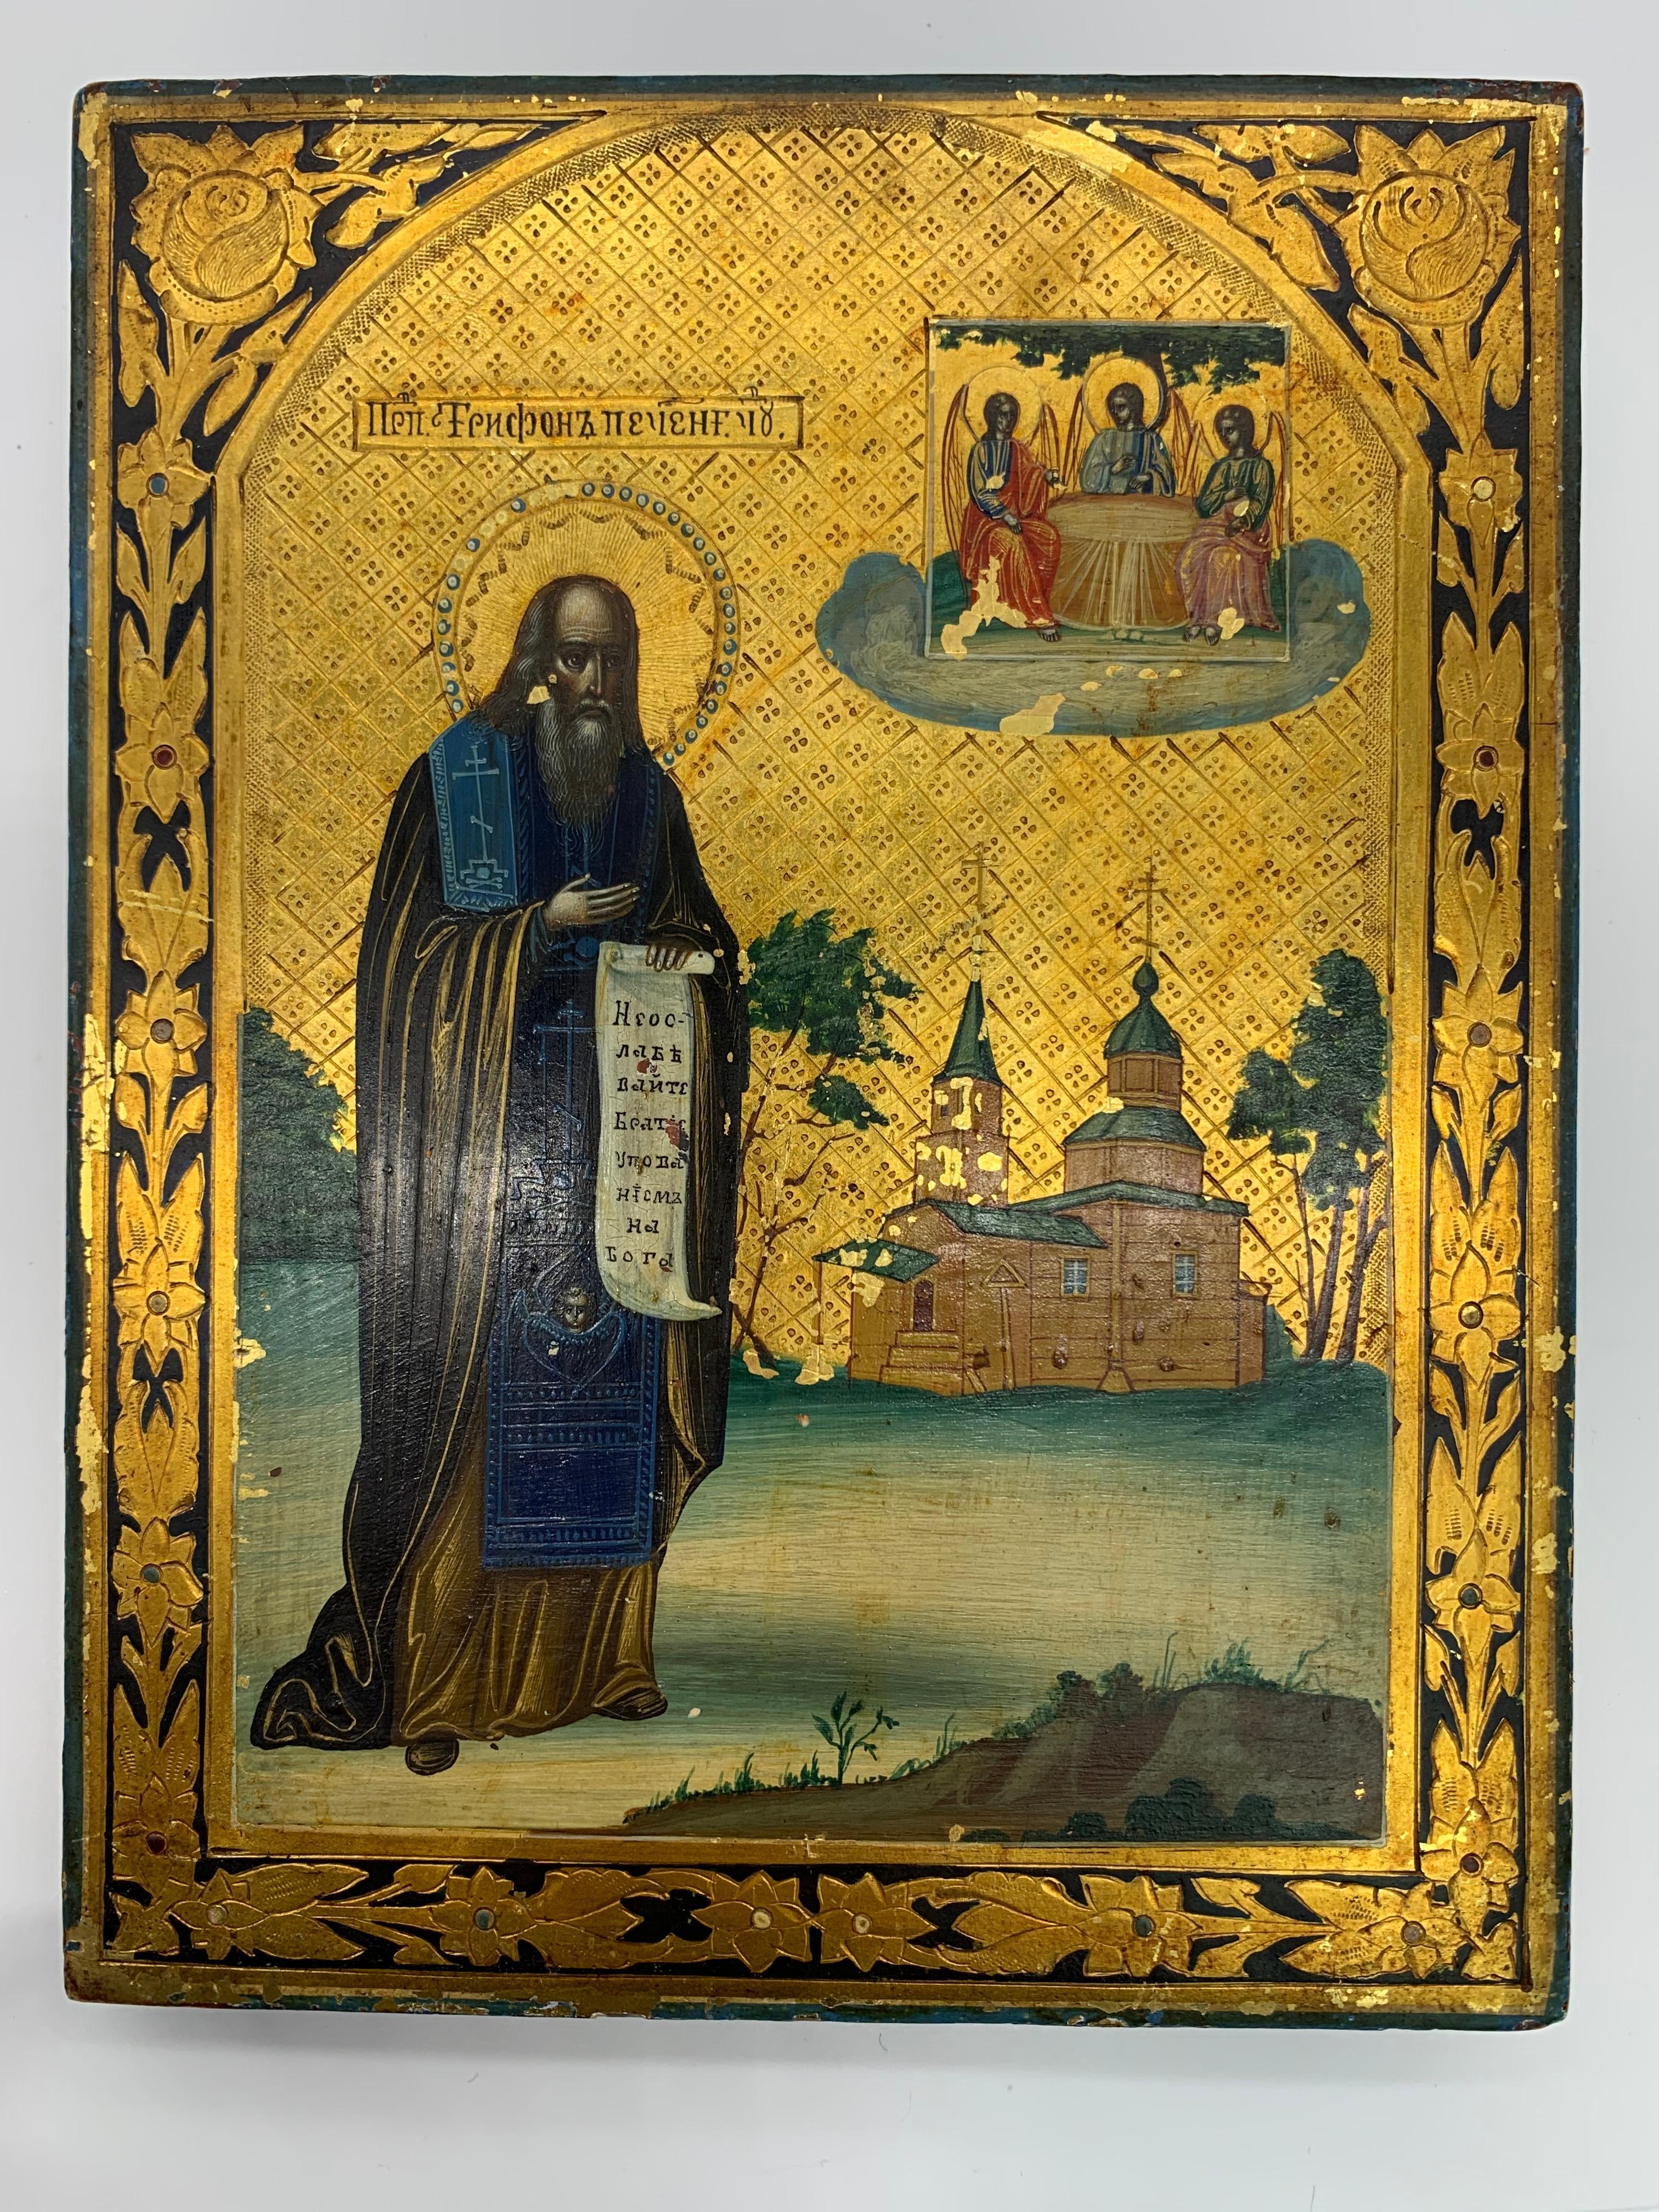 Russische Ikone, Siegel mit Wachs und Datum 1899, aber die Ikone ist wahrscheinlich älter.
Viele goldene Details und schöne Malerei mit 3 Engeln am Tisch in der rechten oberen Ecke.
Und ein Heiliger in der Mitte, der eine Schriftrolle hält.